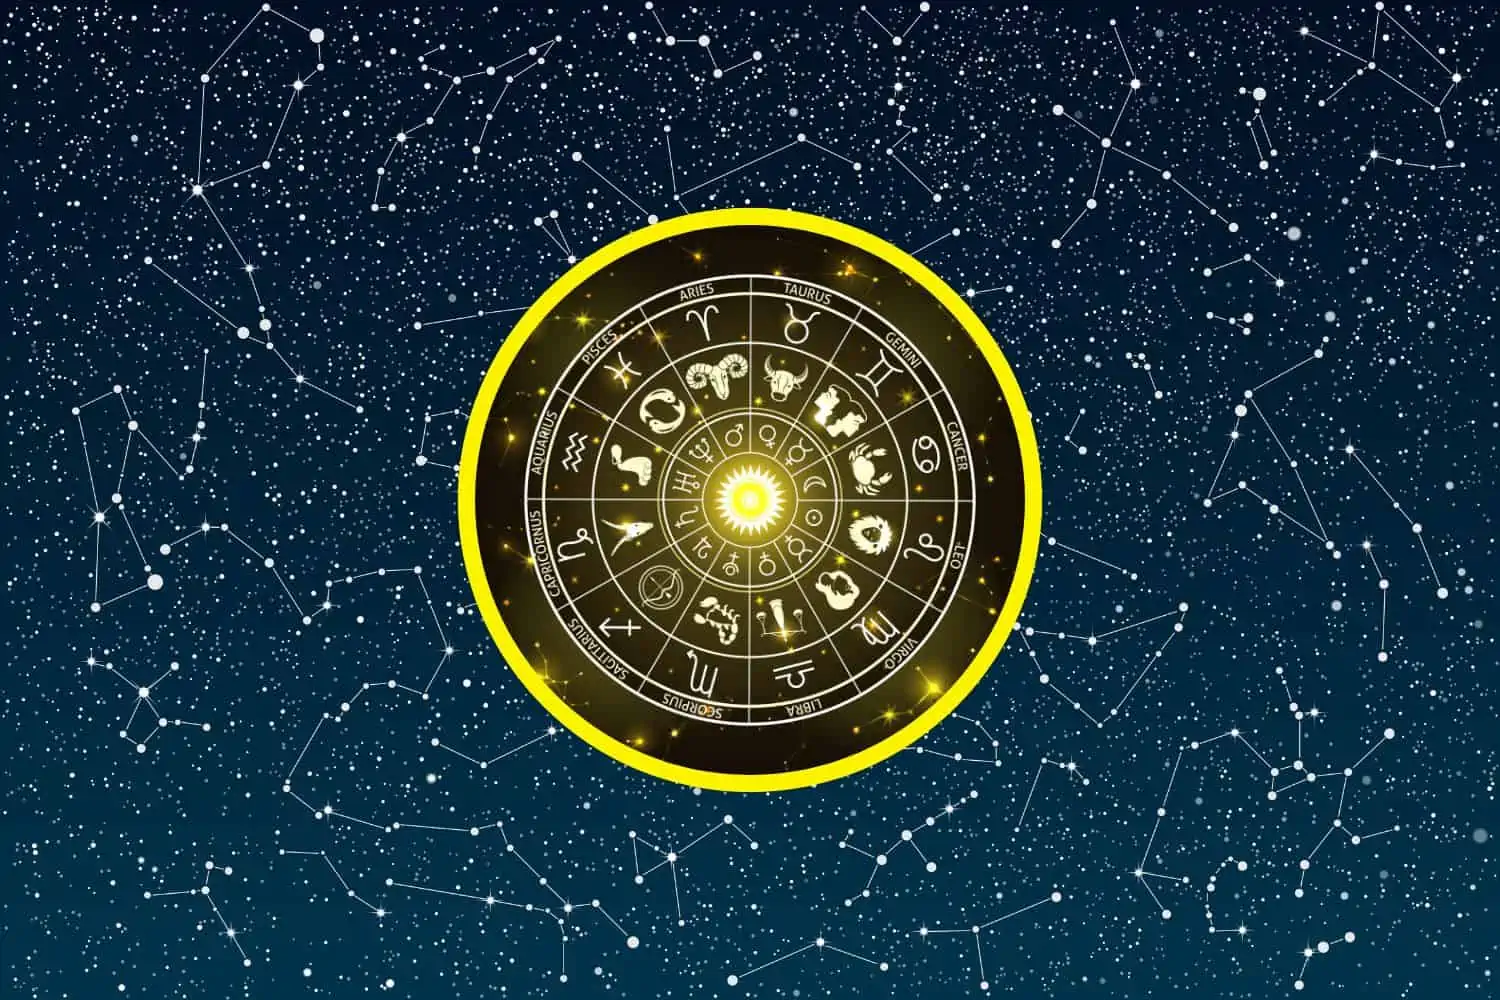 Today’s Free Horoscopes Wednesday 11 January 2023